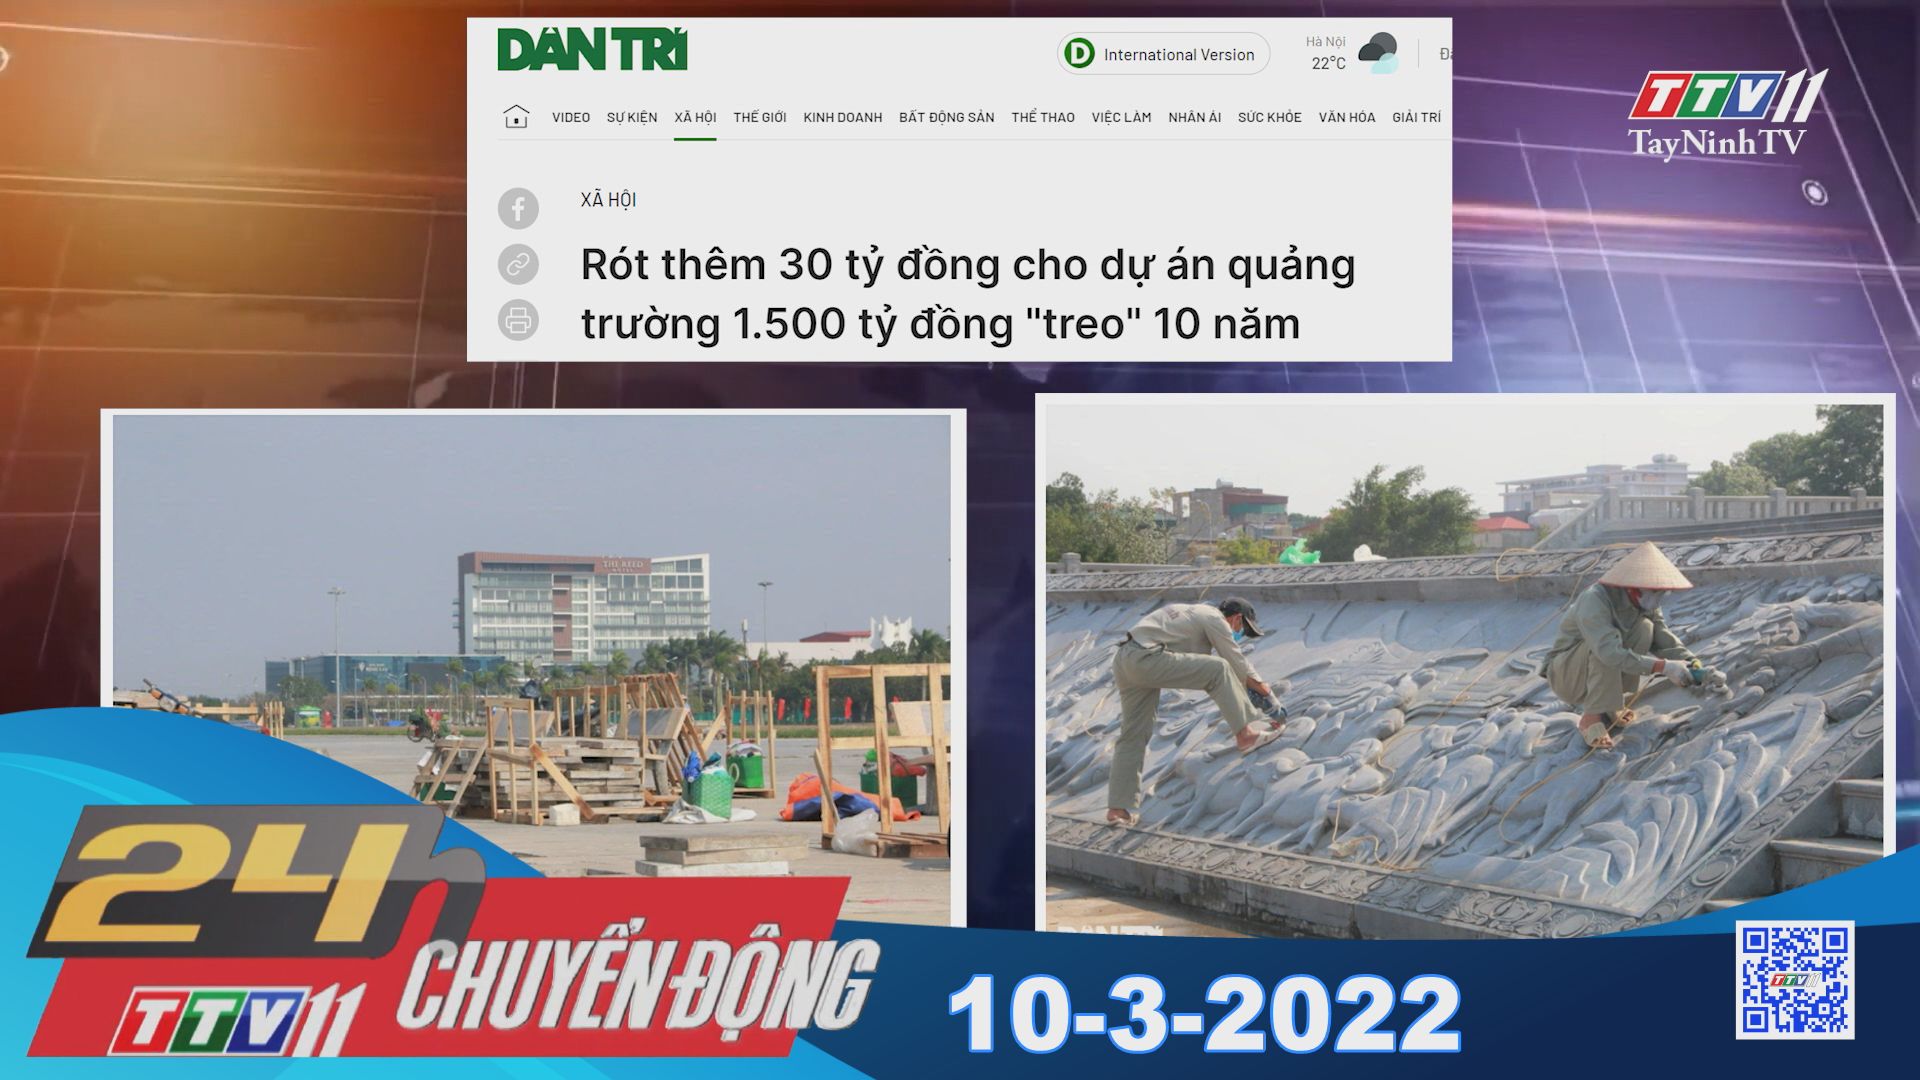 24h Chuyển động 10-3-2022 | Tin tức hôm nay | TayNinhTV